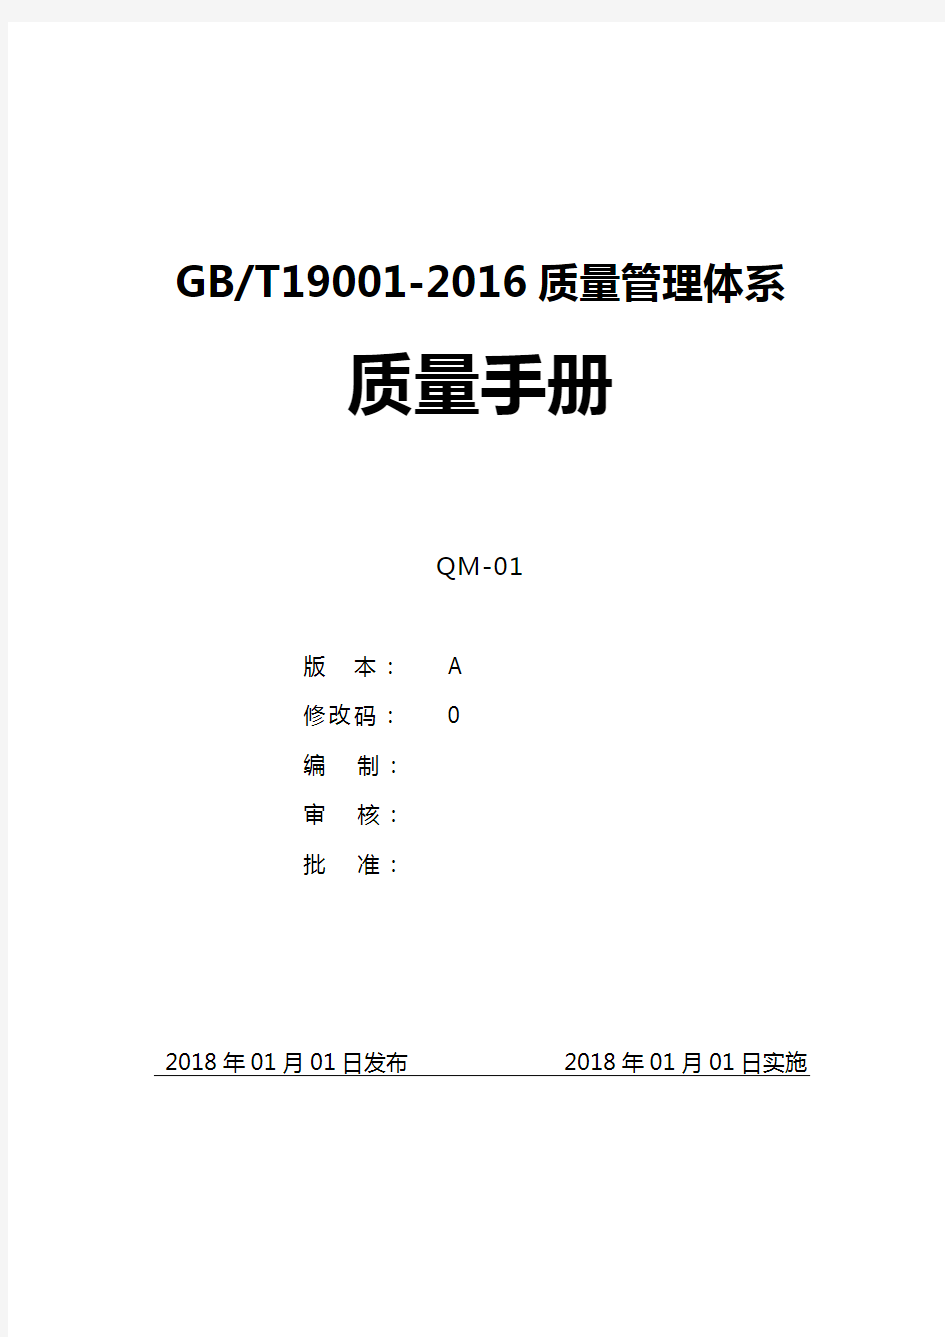 GBT19001-2016质量管理体系质量手册